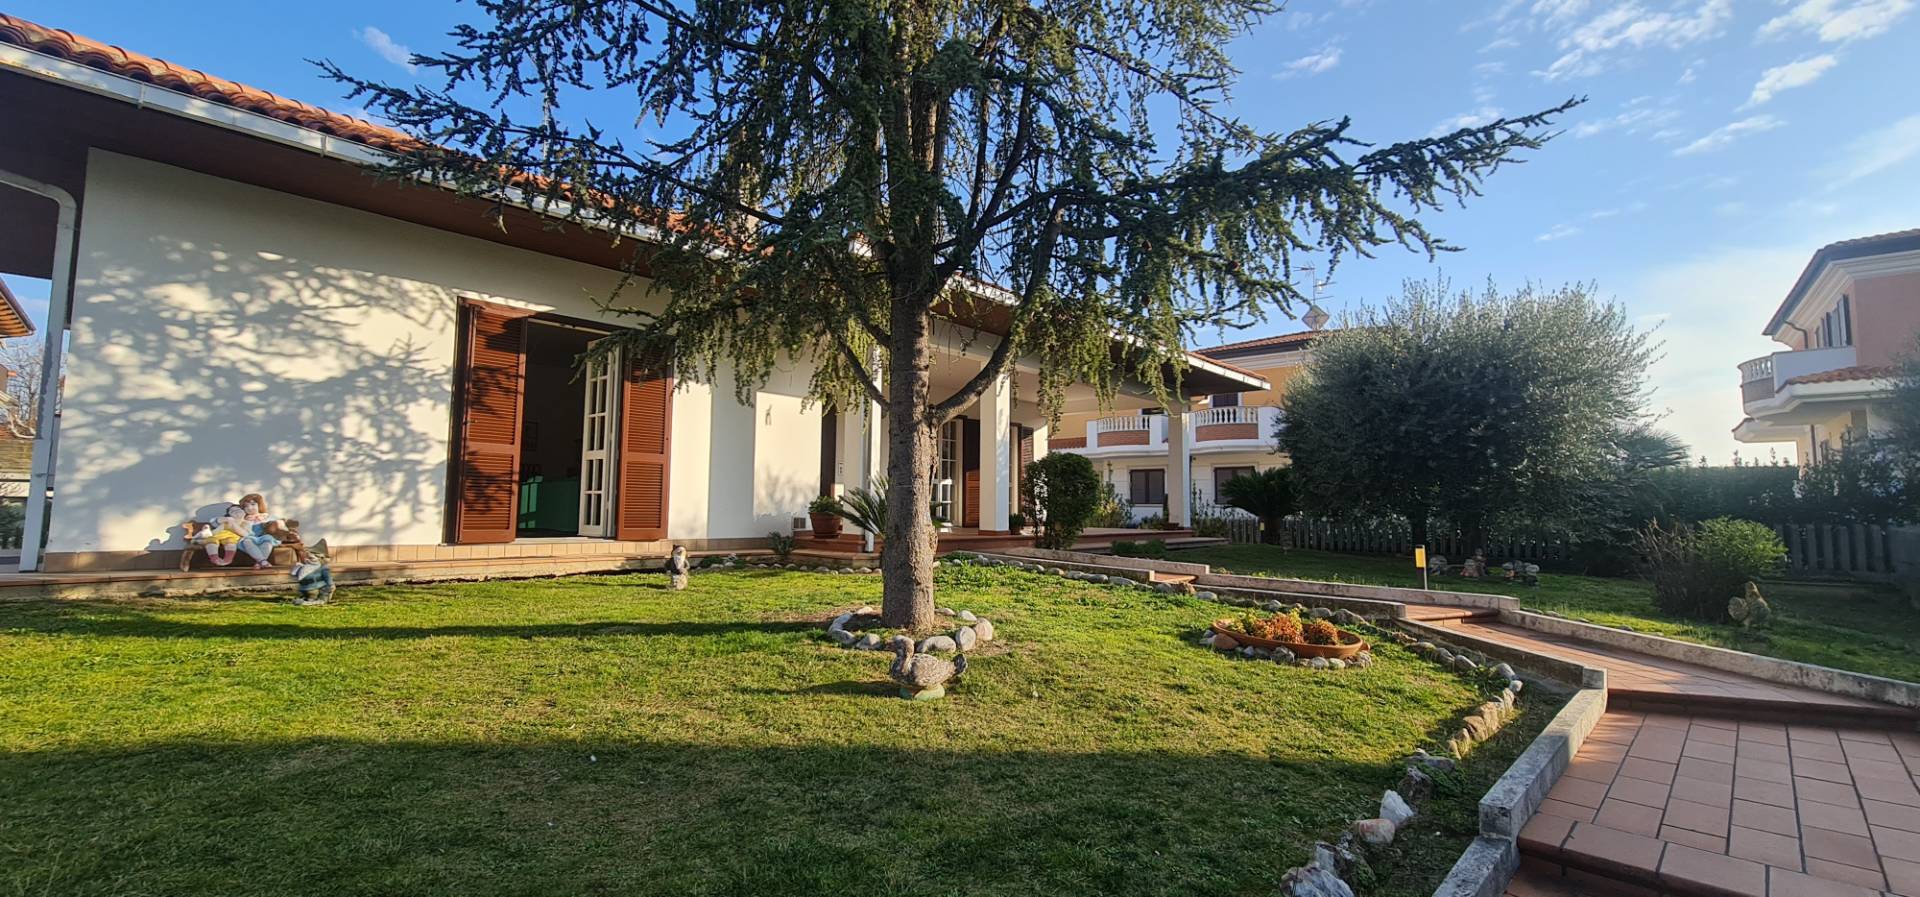 Villa in vendita a Sant'Egidio alla Vibrata, 6 locali, zona antonio, prezzo € 270.000 | PortaleAgenzieImmobiliari.it